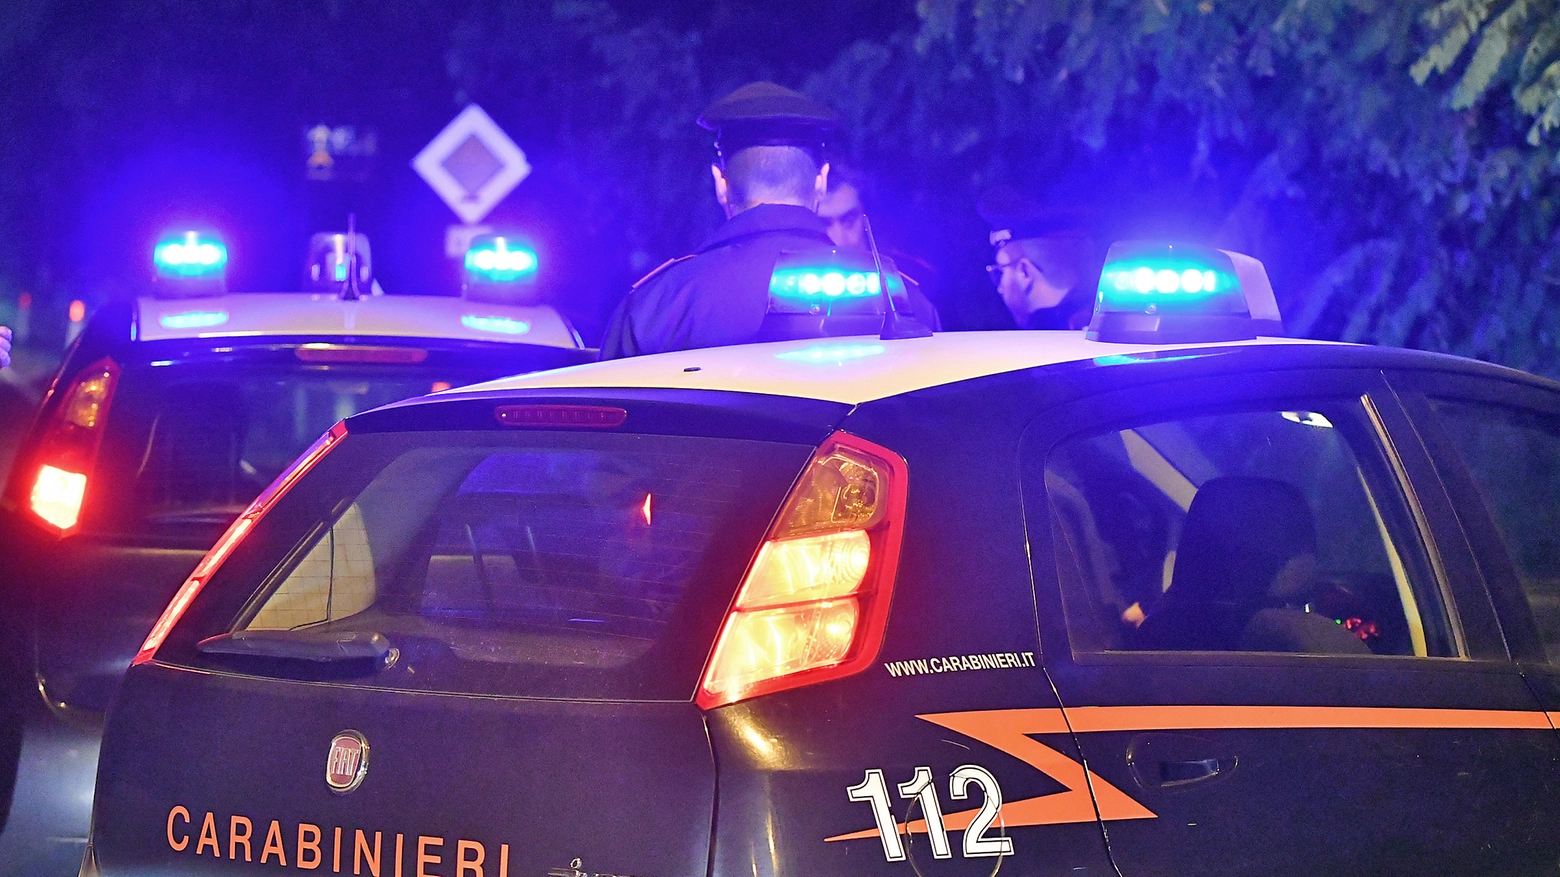 La violenta lite è avvenuta vicino alla caserma dei carabinieri